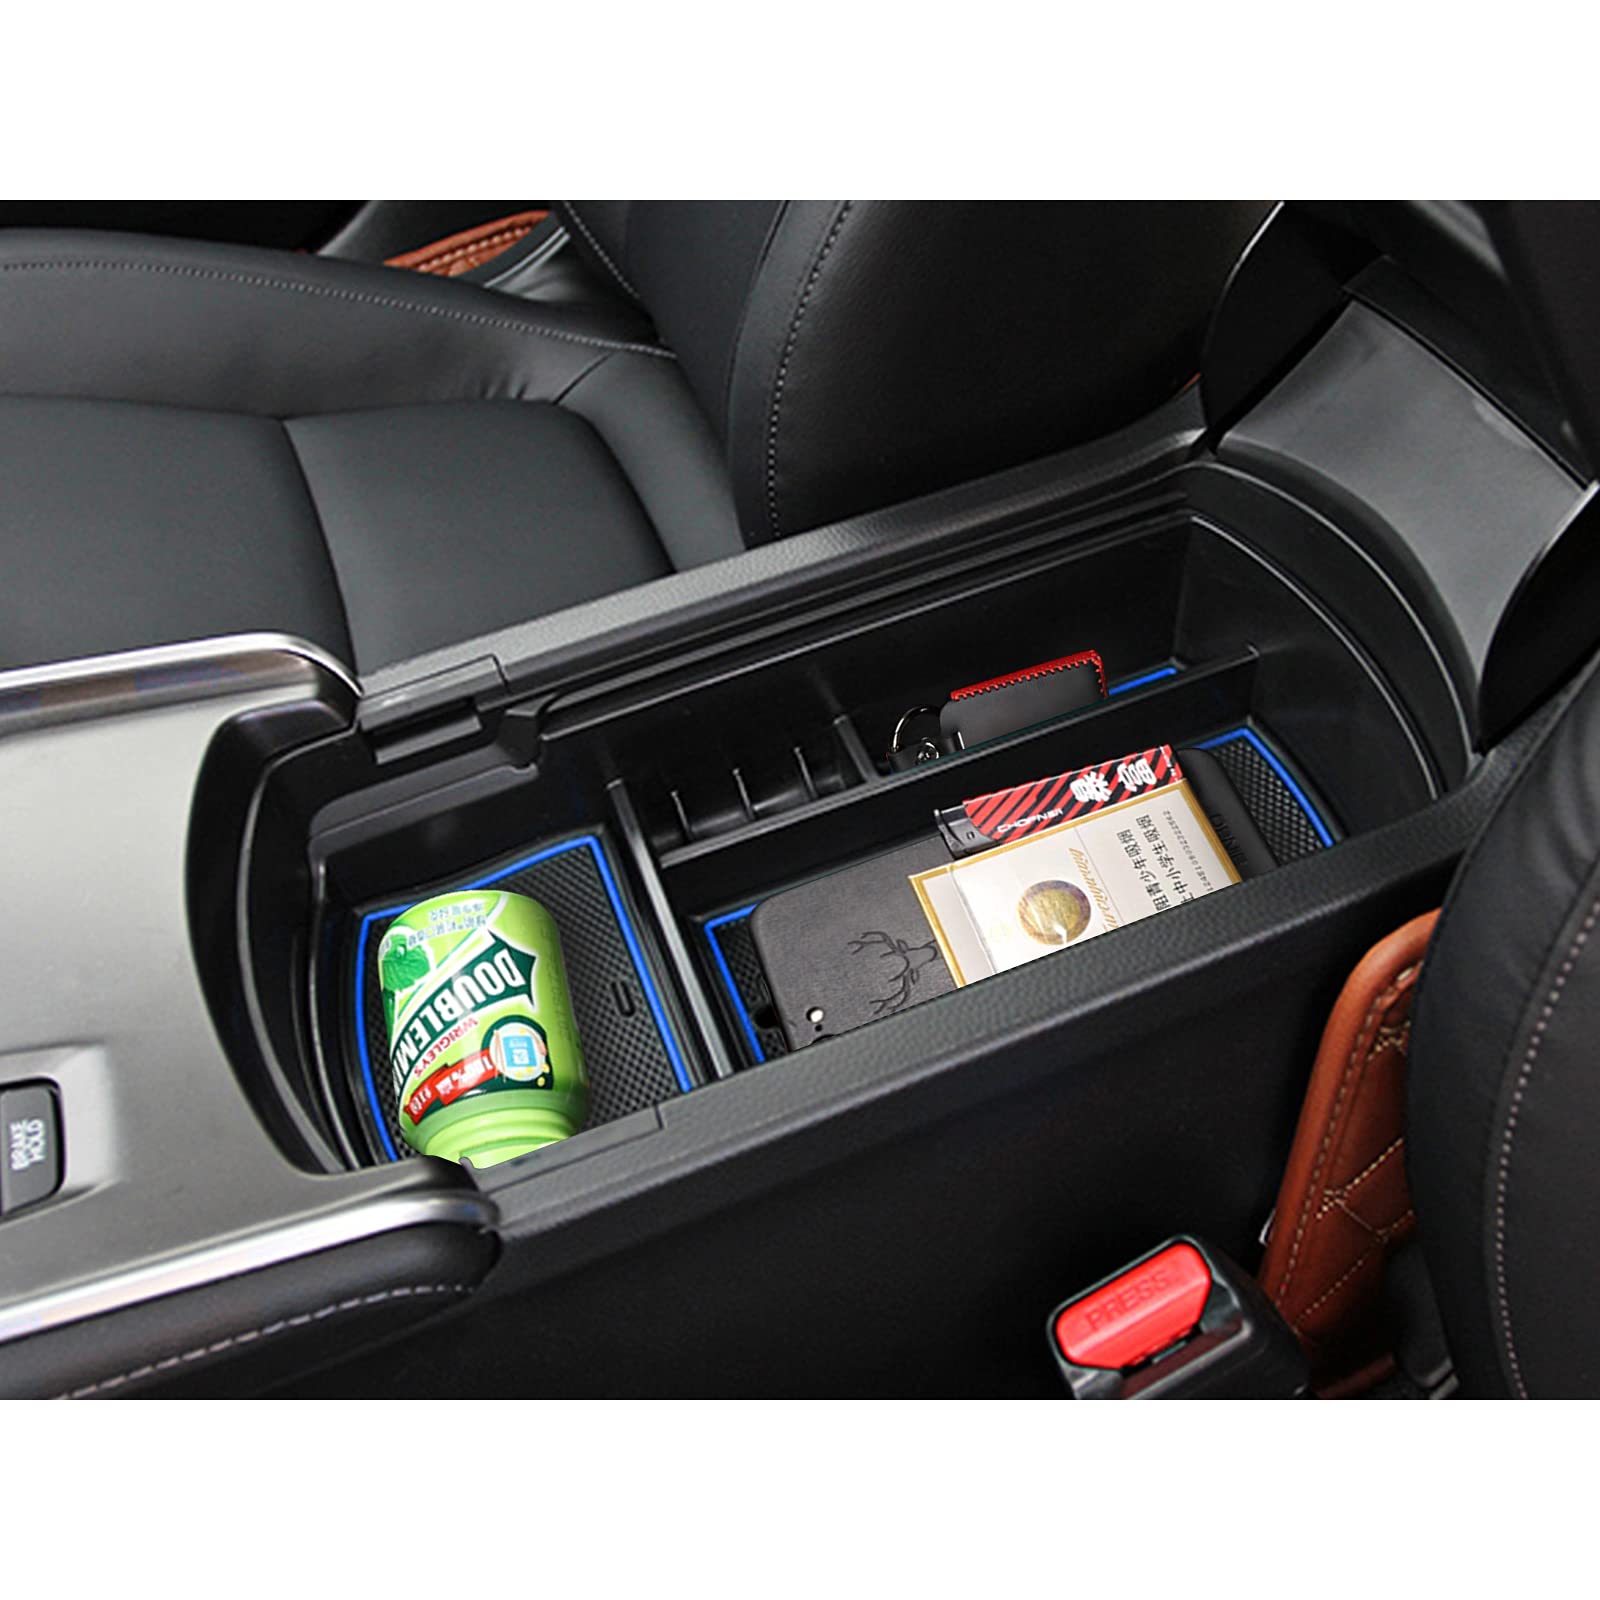 Honda Accord Center Console Organizer Tray 2018+ - LFOTPP Car Accessories